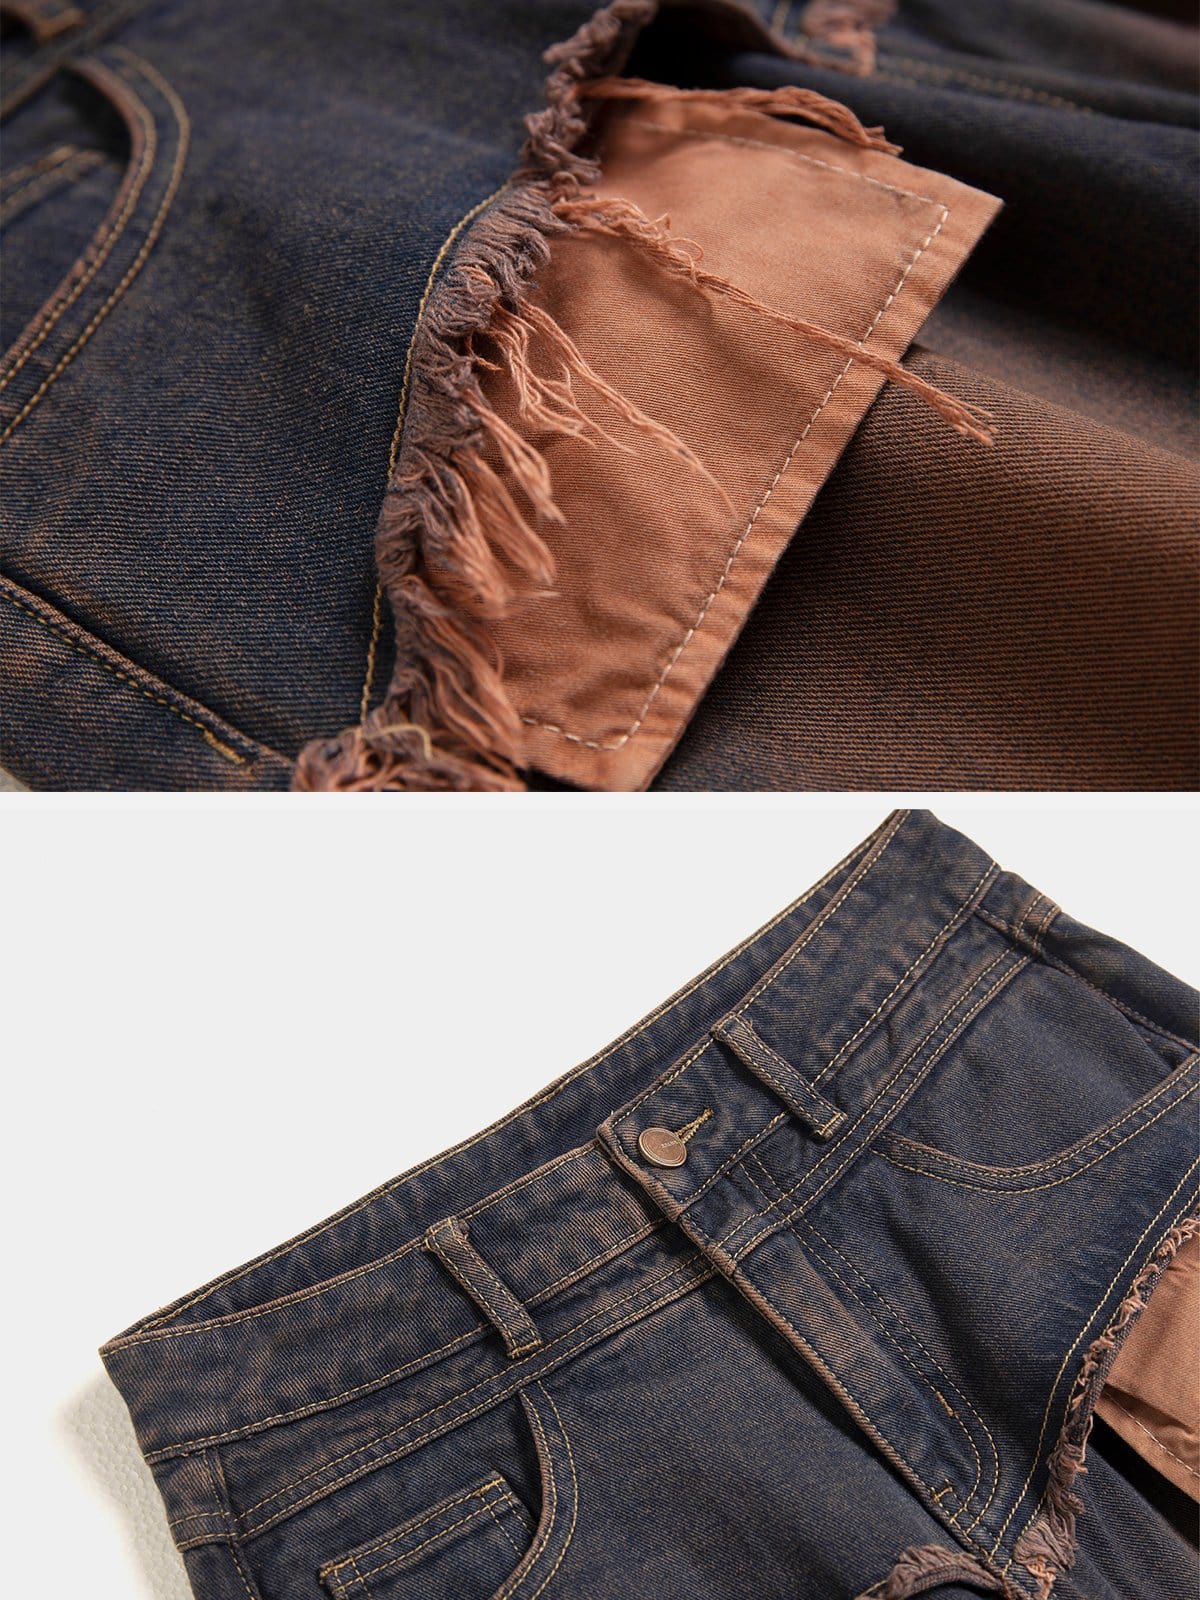 NEV Fringe Distressed Jeans